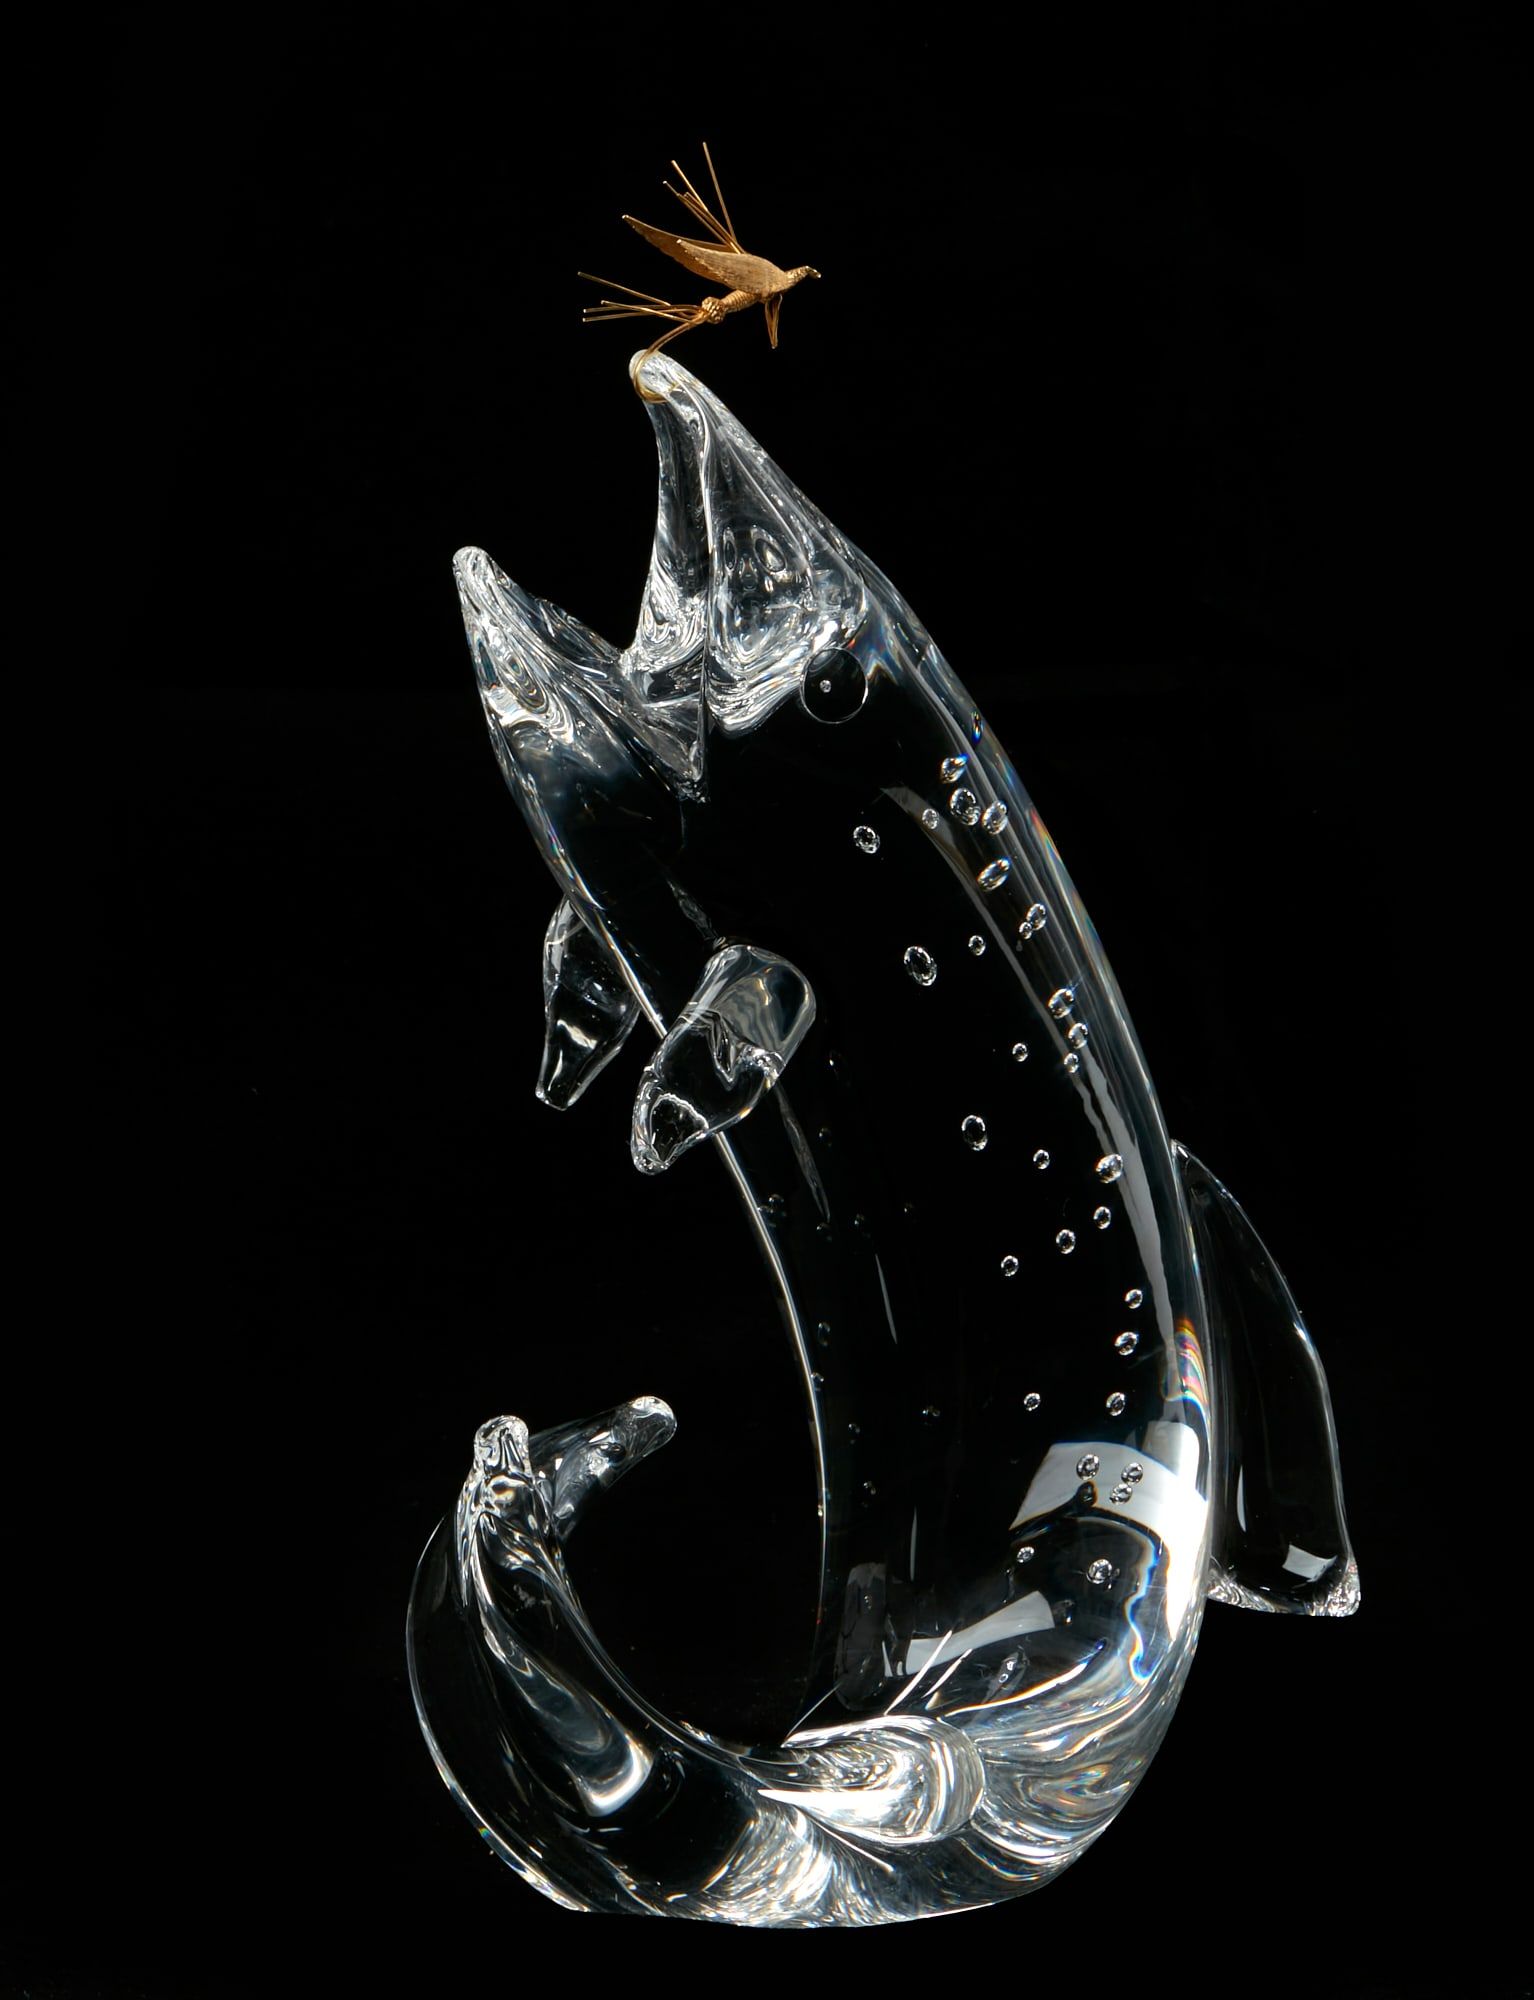 A STEUBEN GLASS MODEL OF A TROUT, 18K